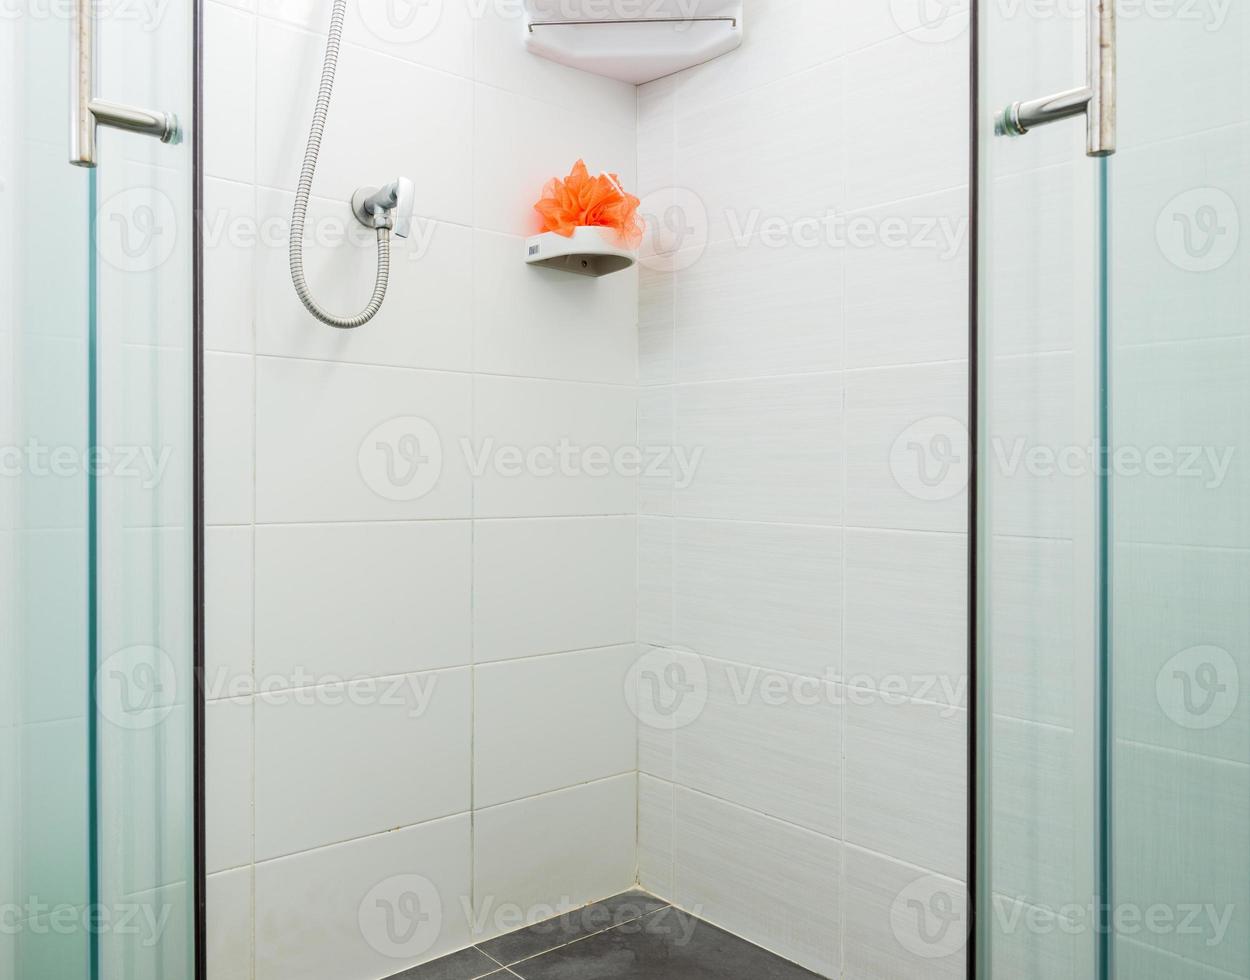 caixa de banho suja com azulejo de parede branca foto